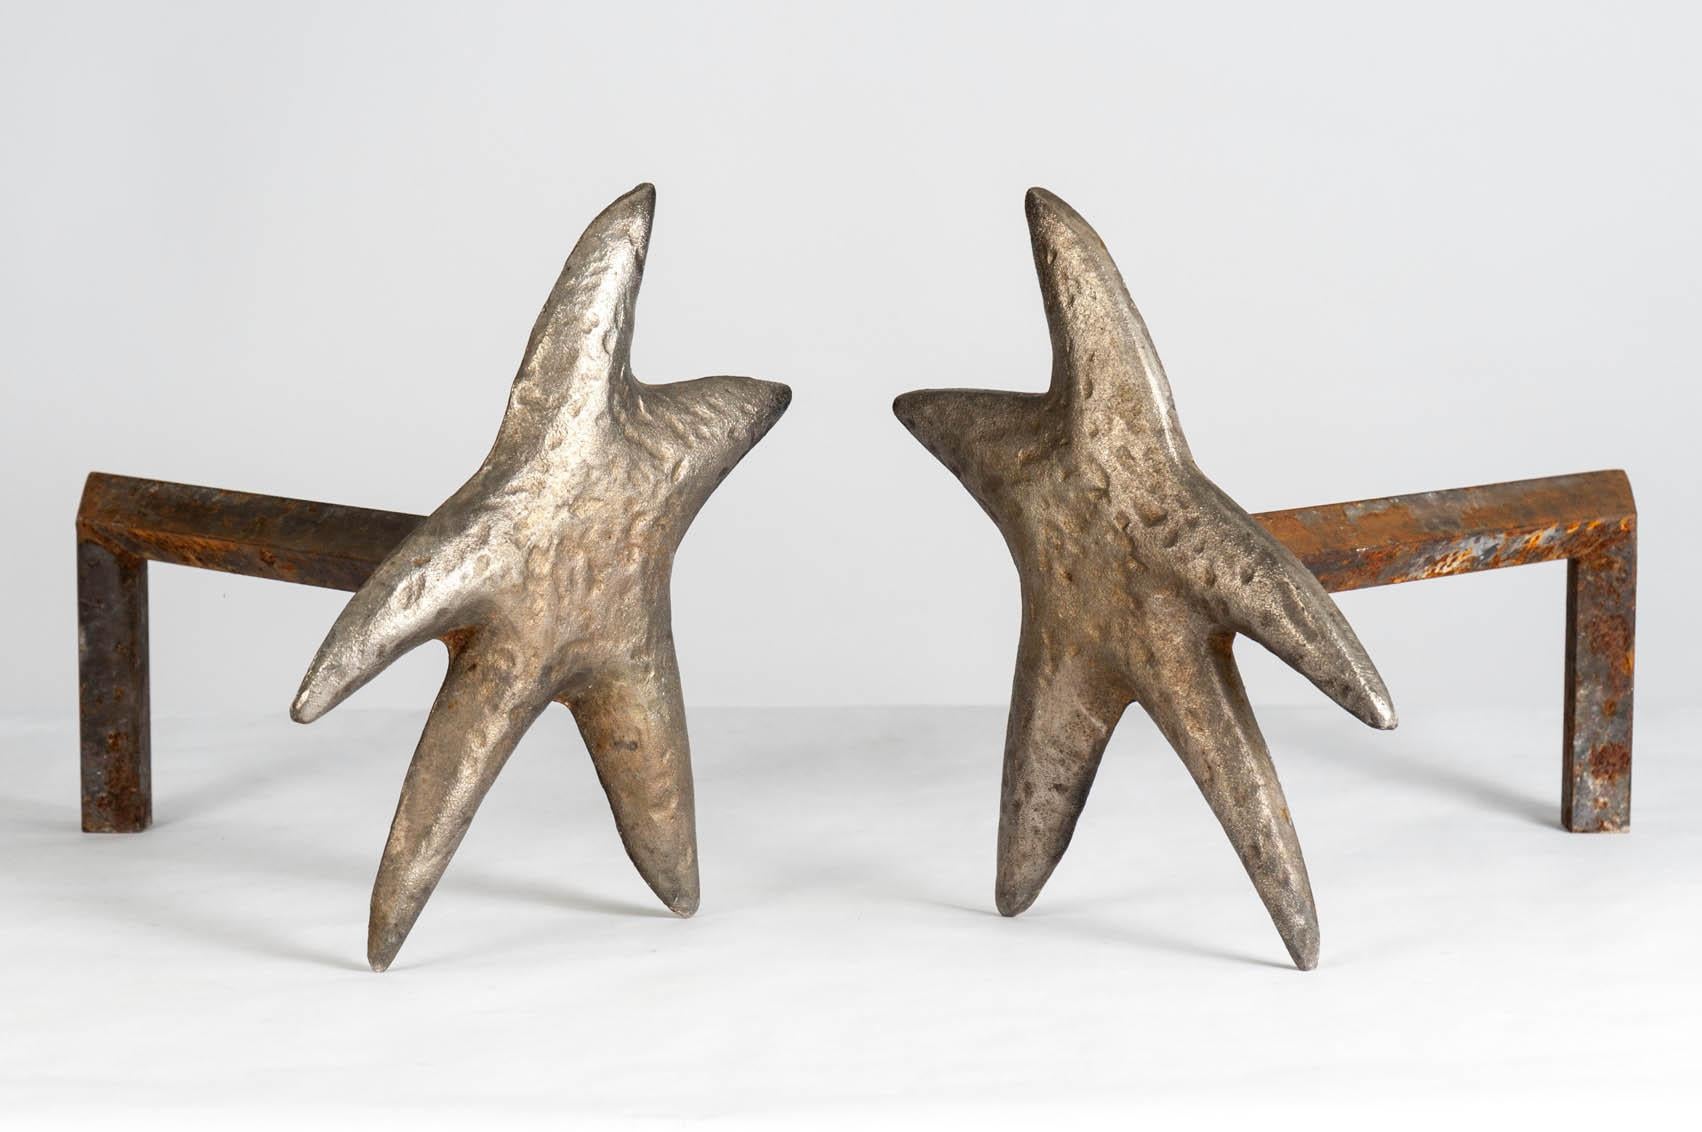 Very nice pair of bronze andirons.